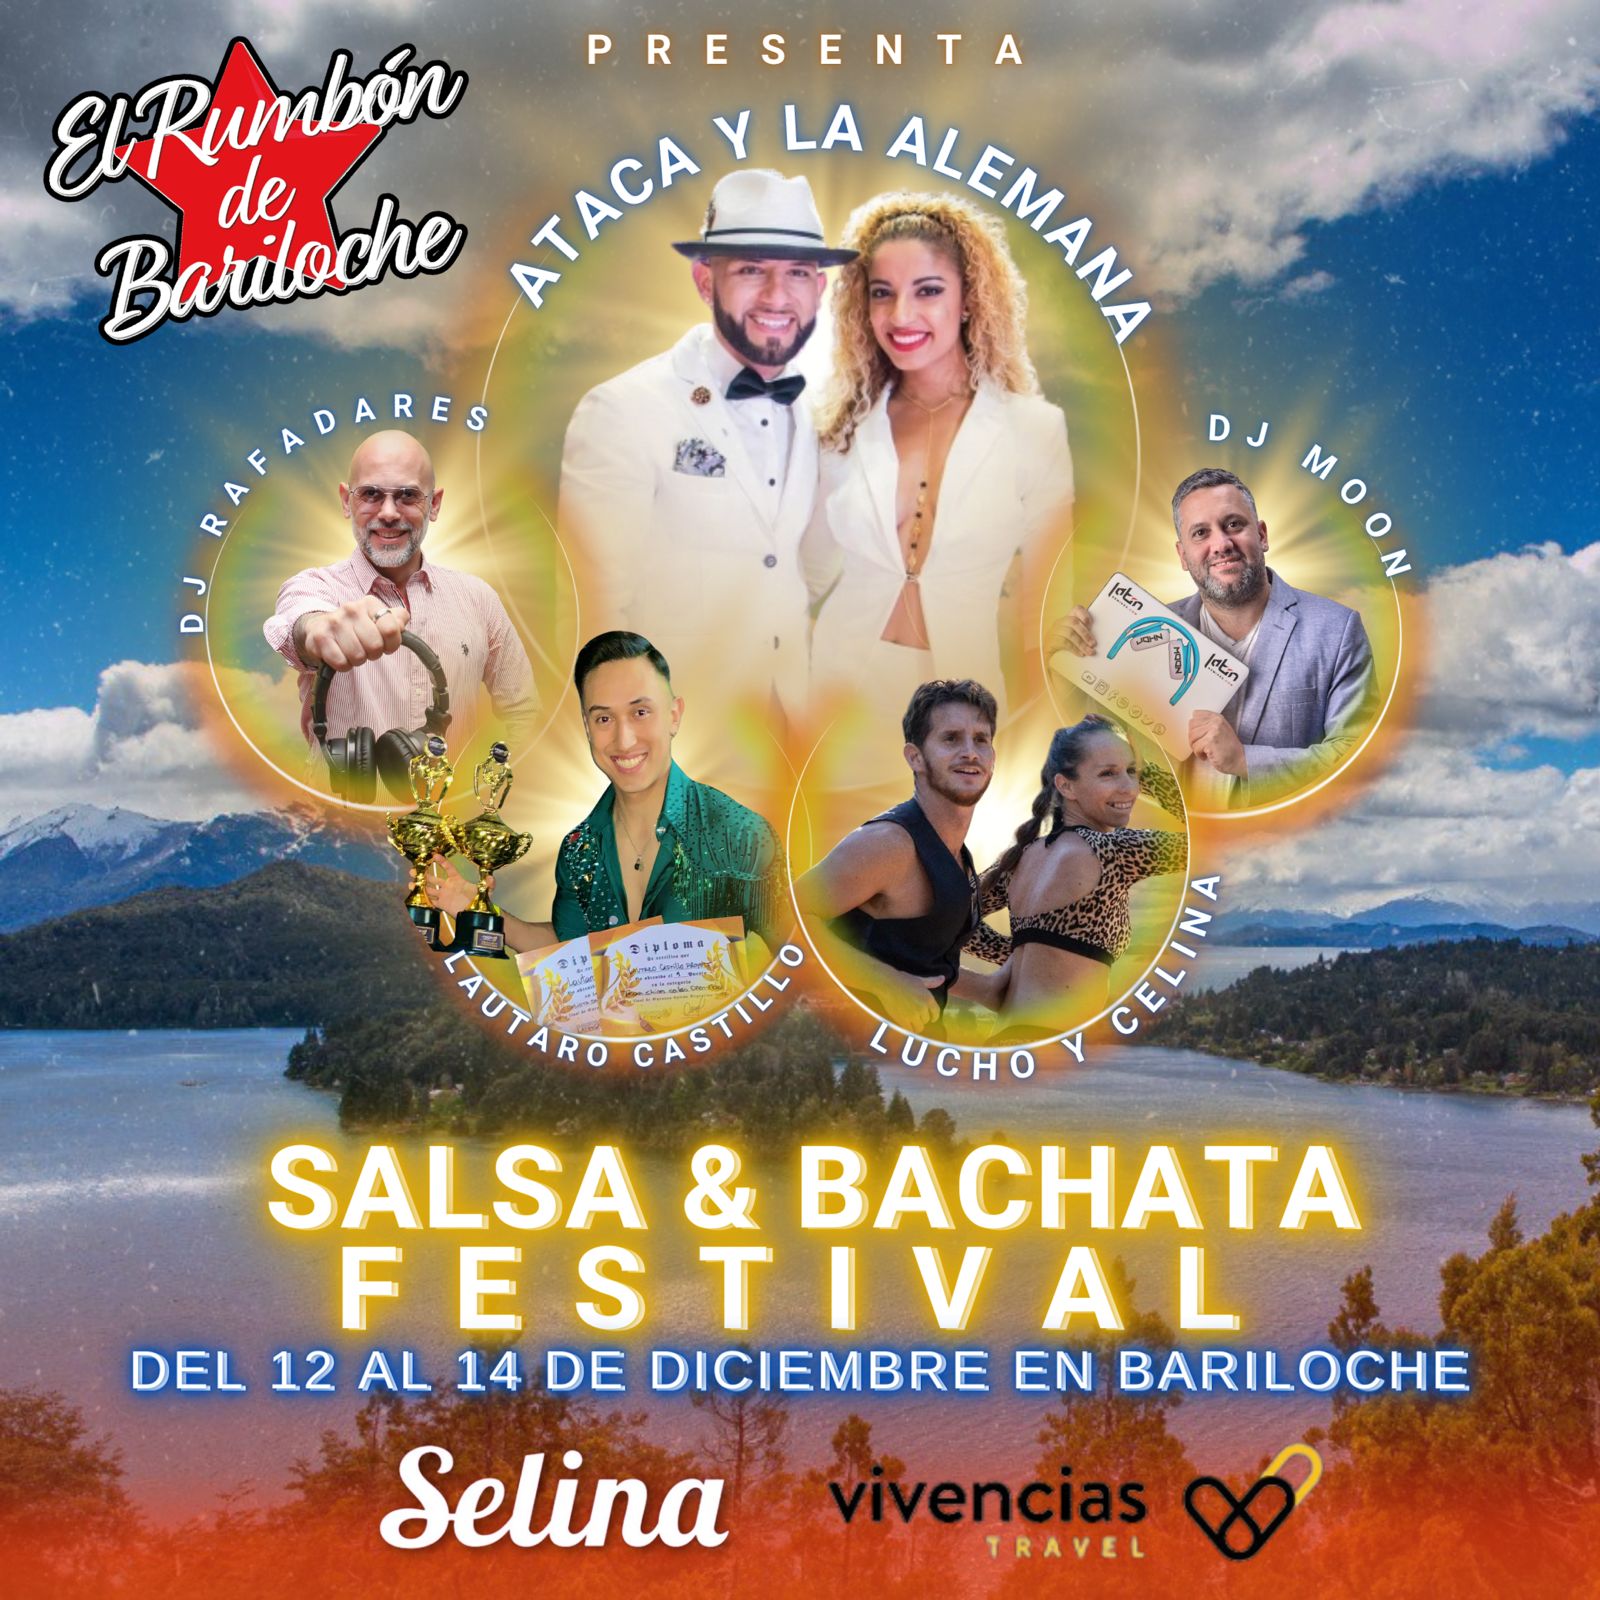 ATACA Y LA ALEMANA Festival Salsa & Bachata